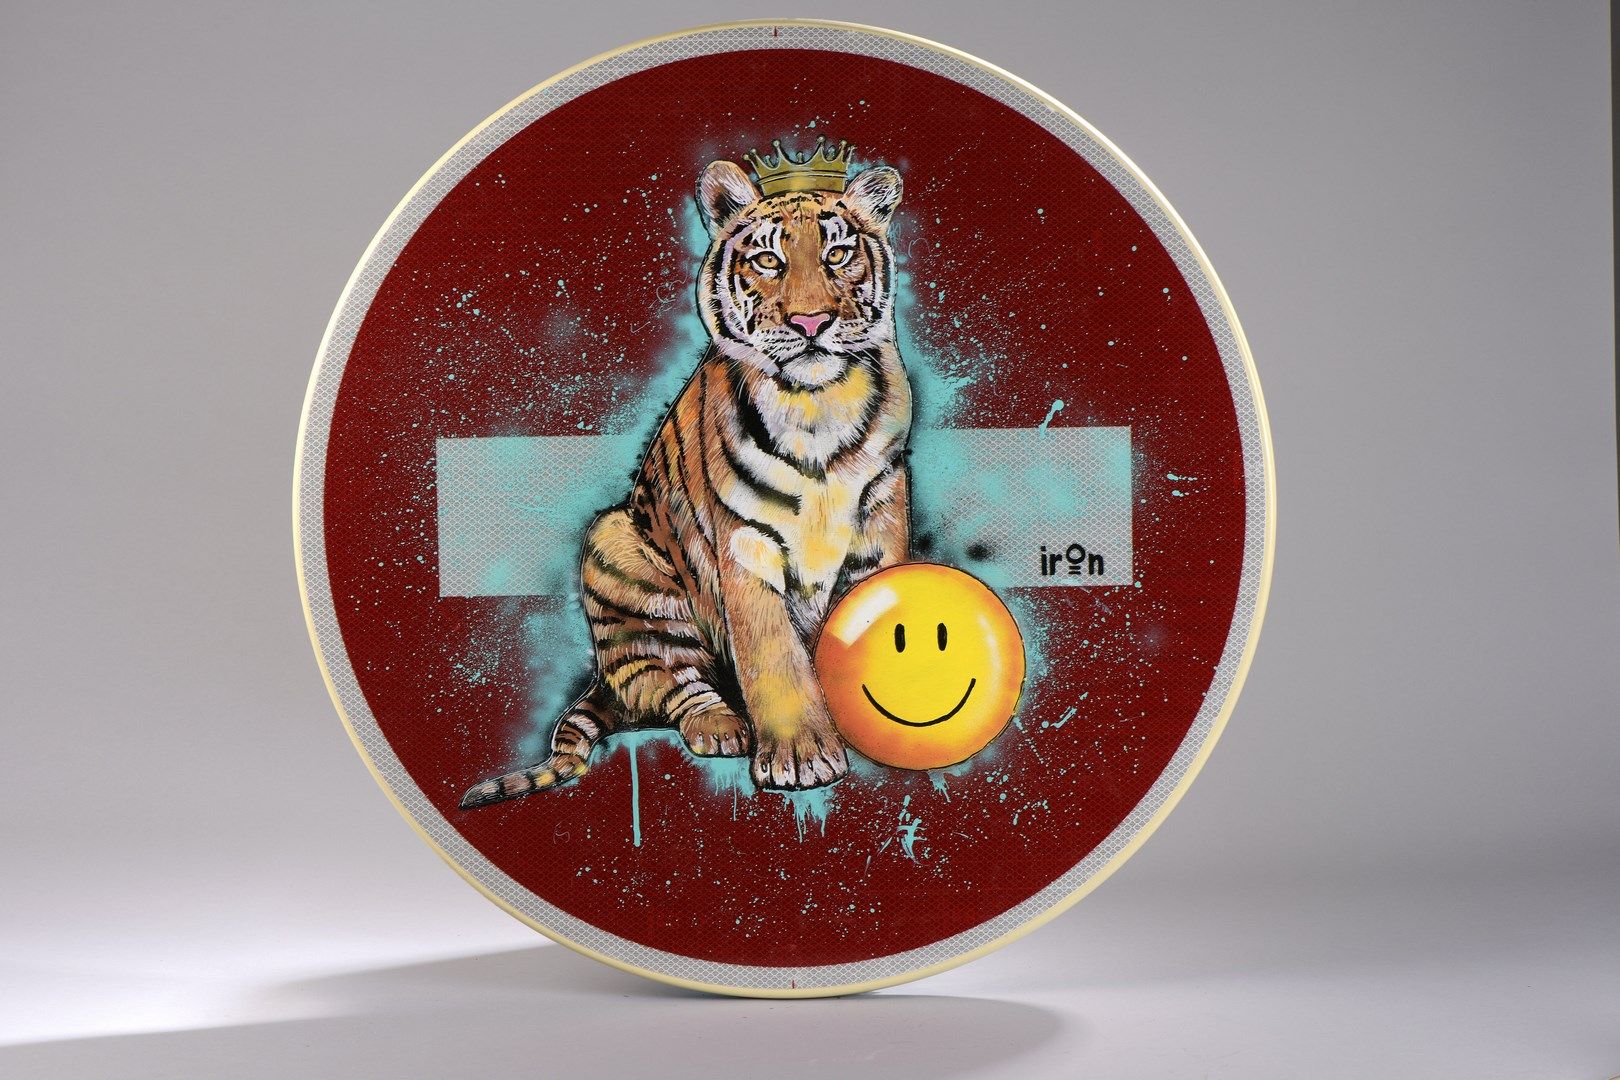 Null 铁人 (1995年出生)

老虎的微笑

路牌上的混合媒体

在右侧签名

背面有艺术家的标签

直径65厘米